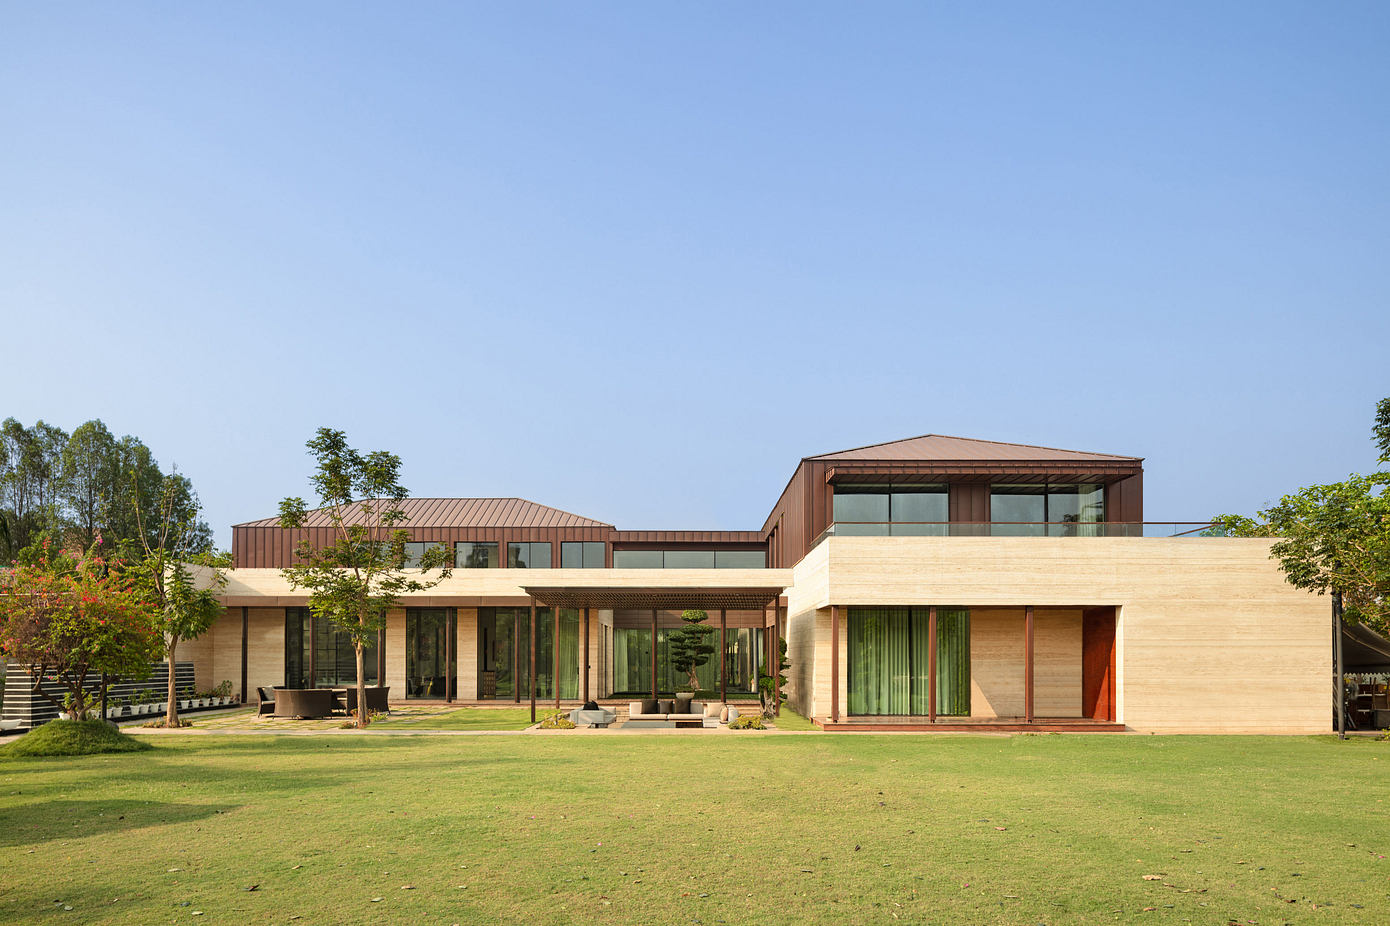 The Quadrant House: Multi-Generational Design with Vastu Principles